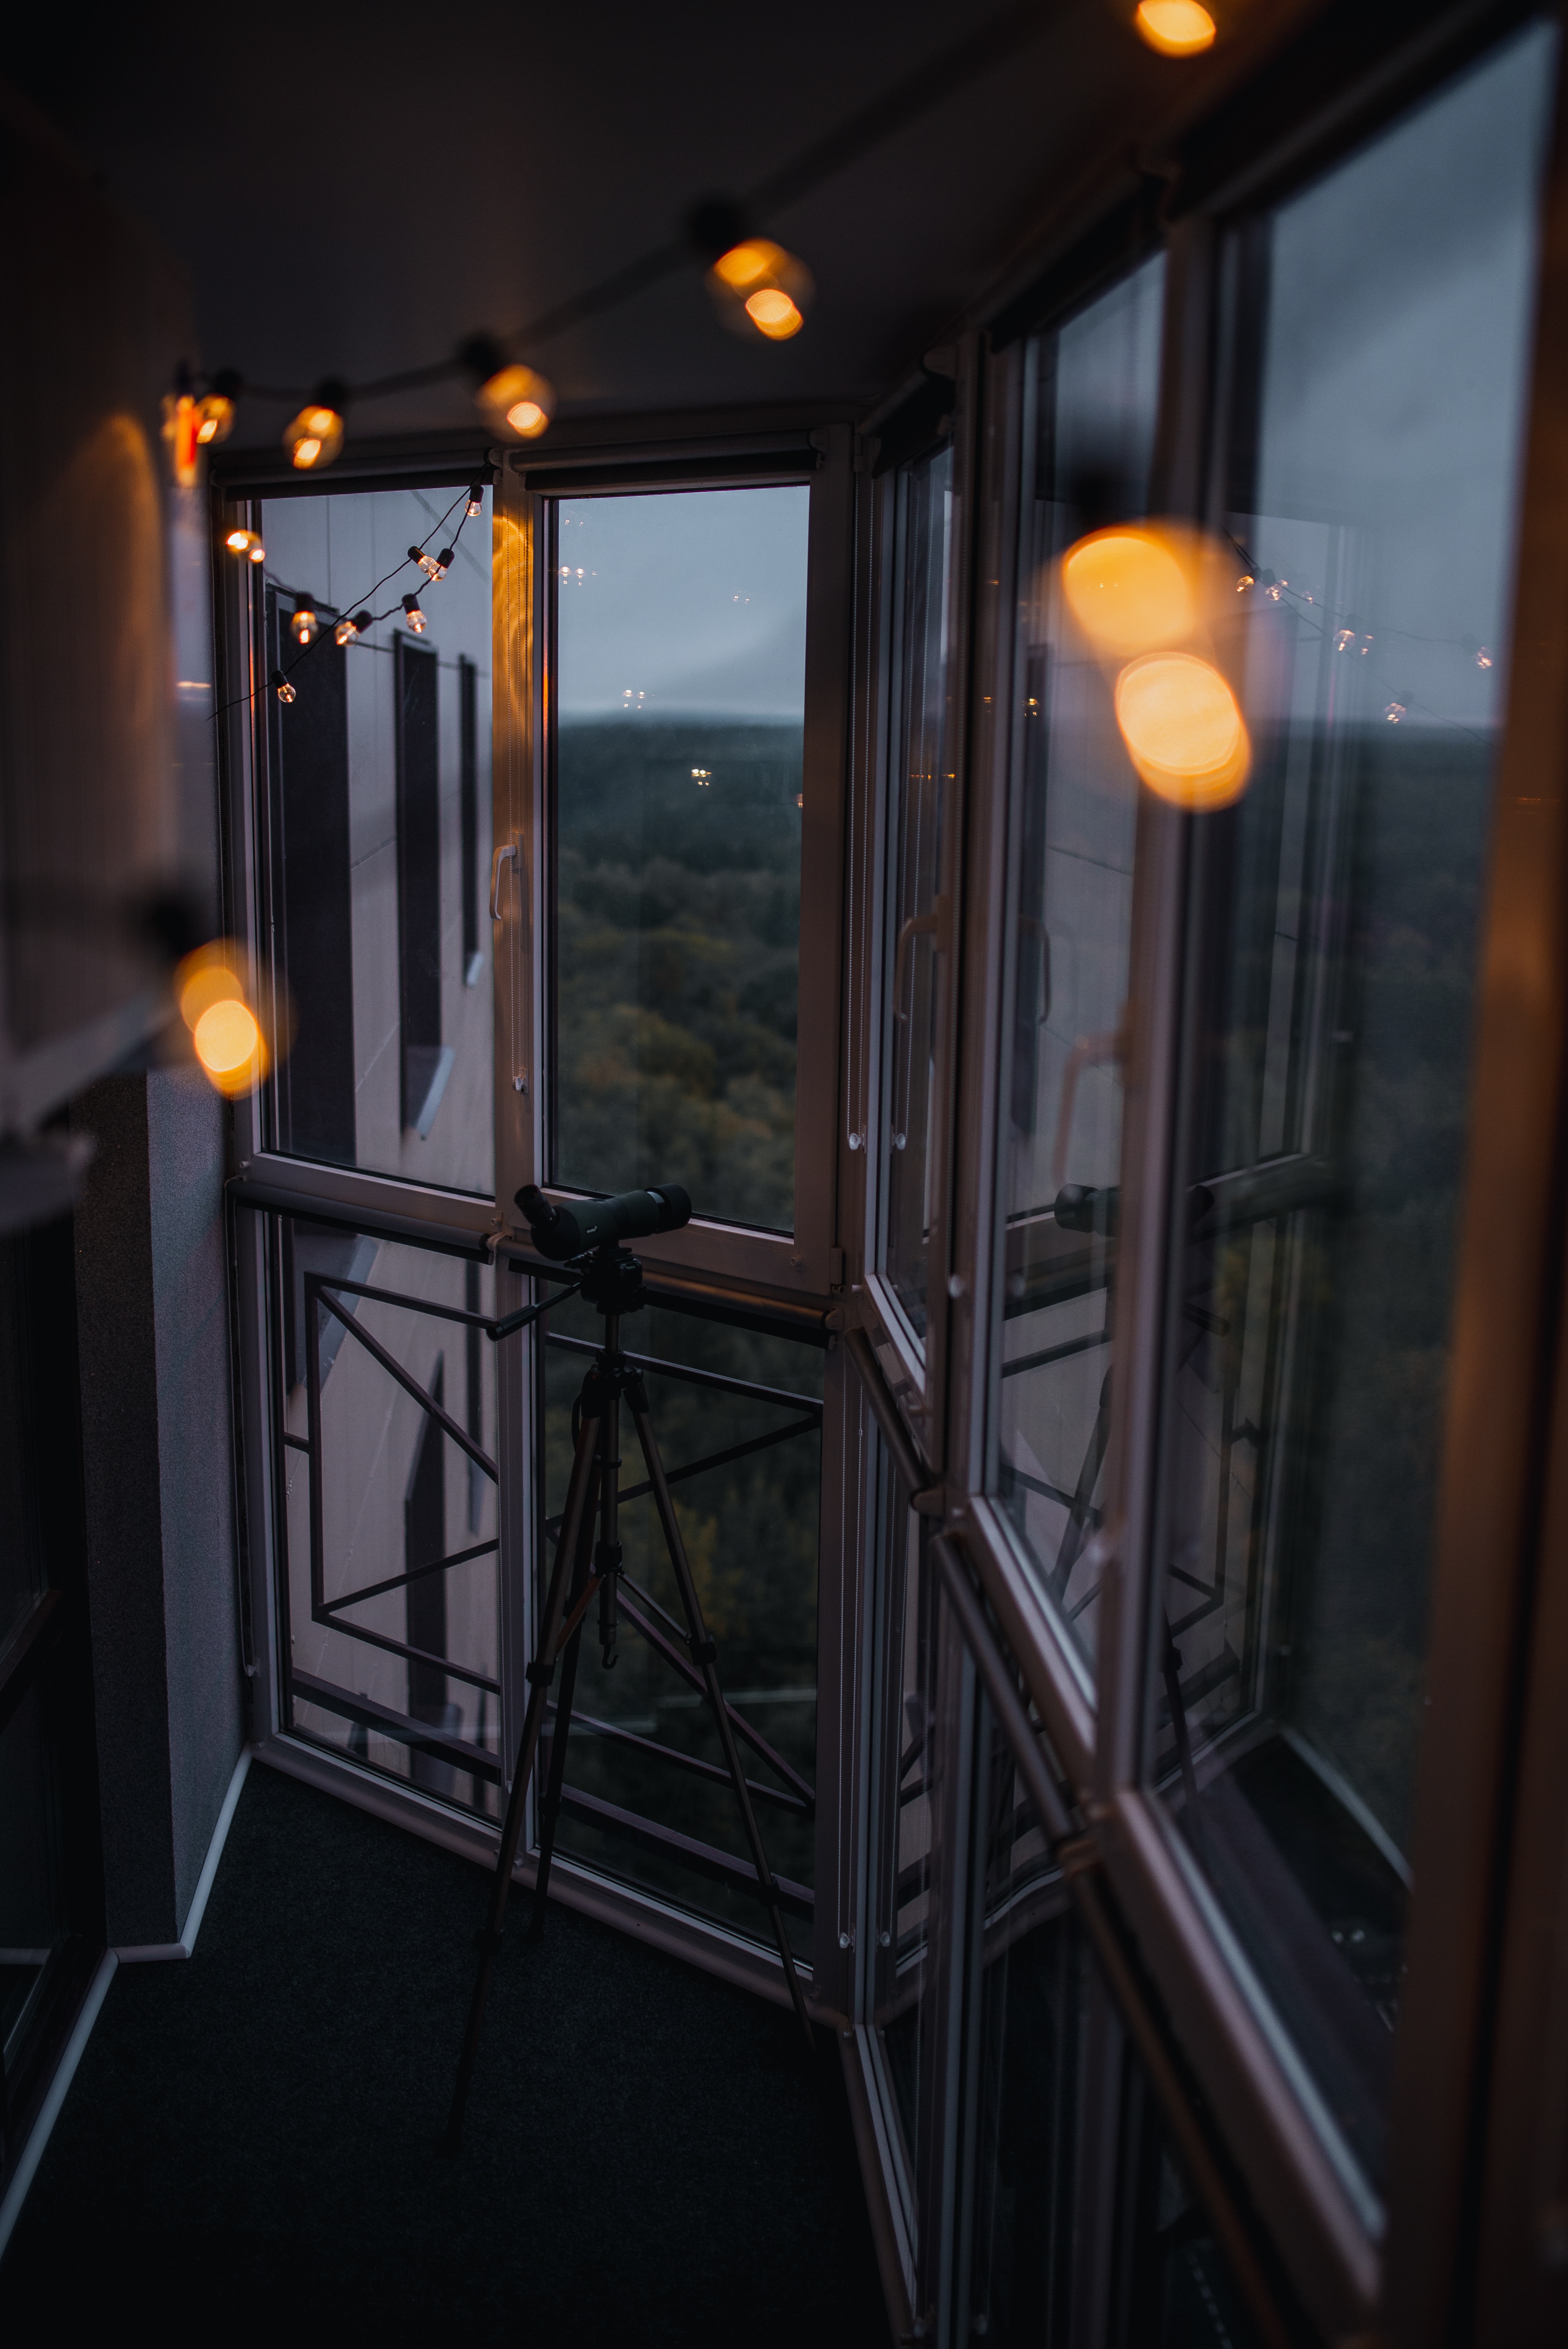 garland, balcony, glare, miscellanea, miscellaneous, window, telescope